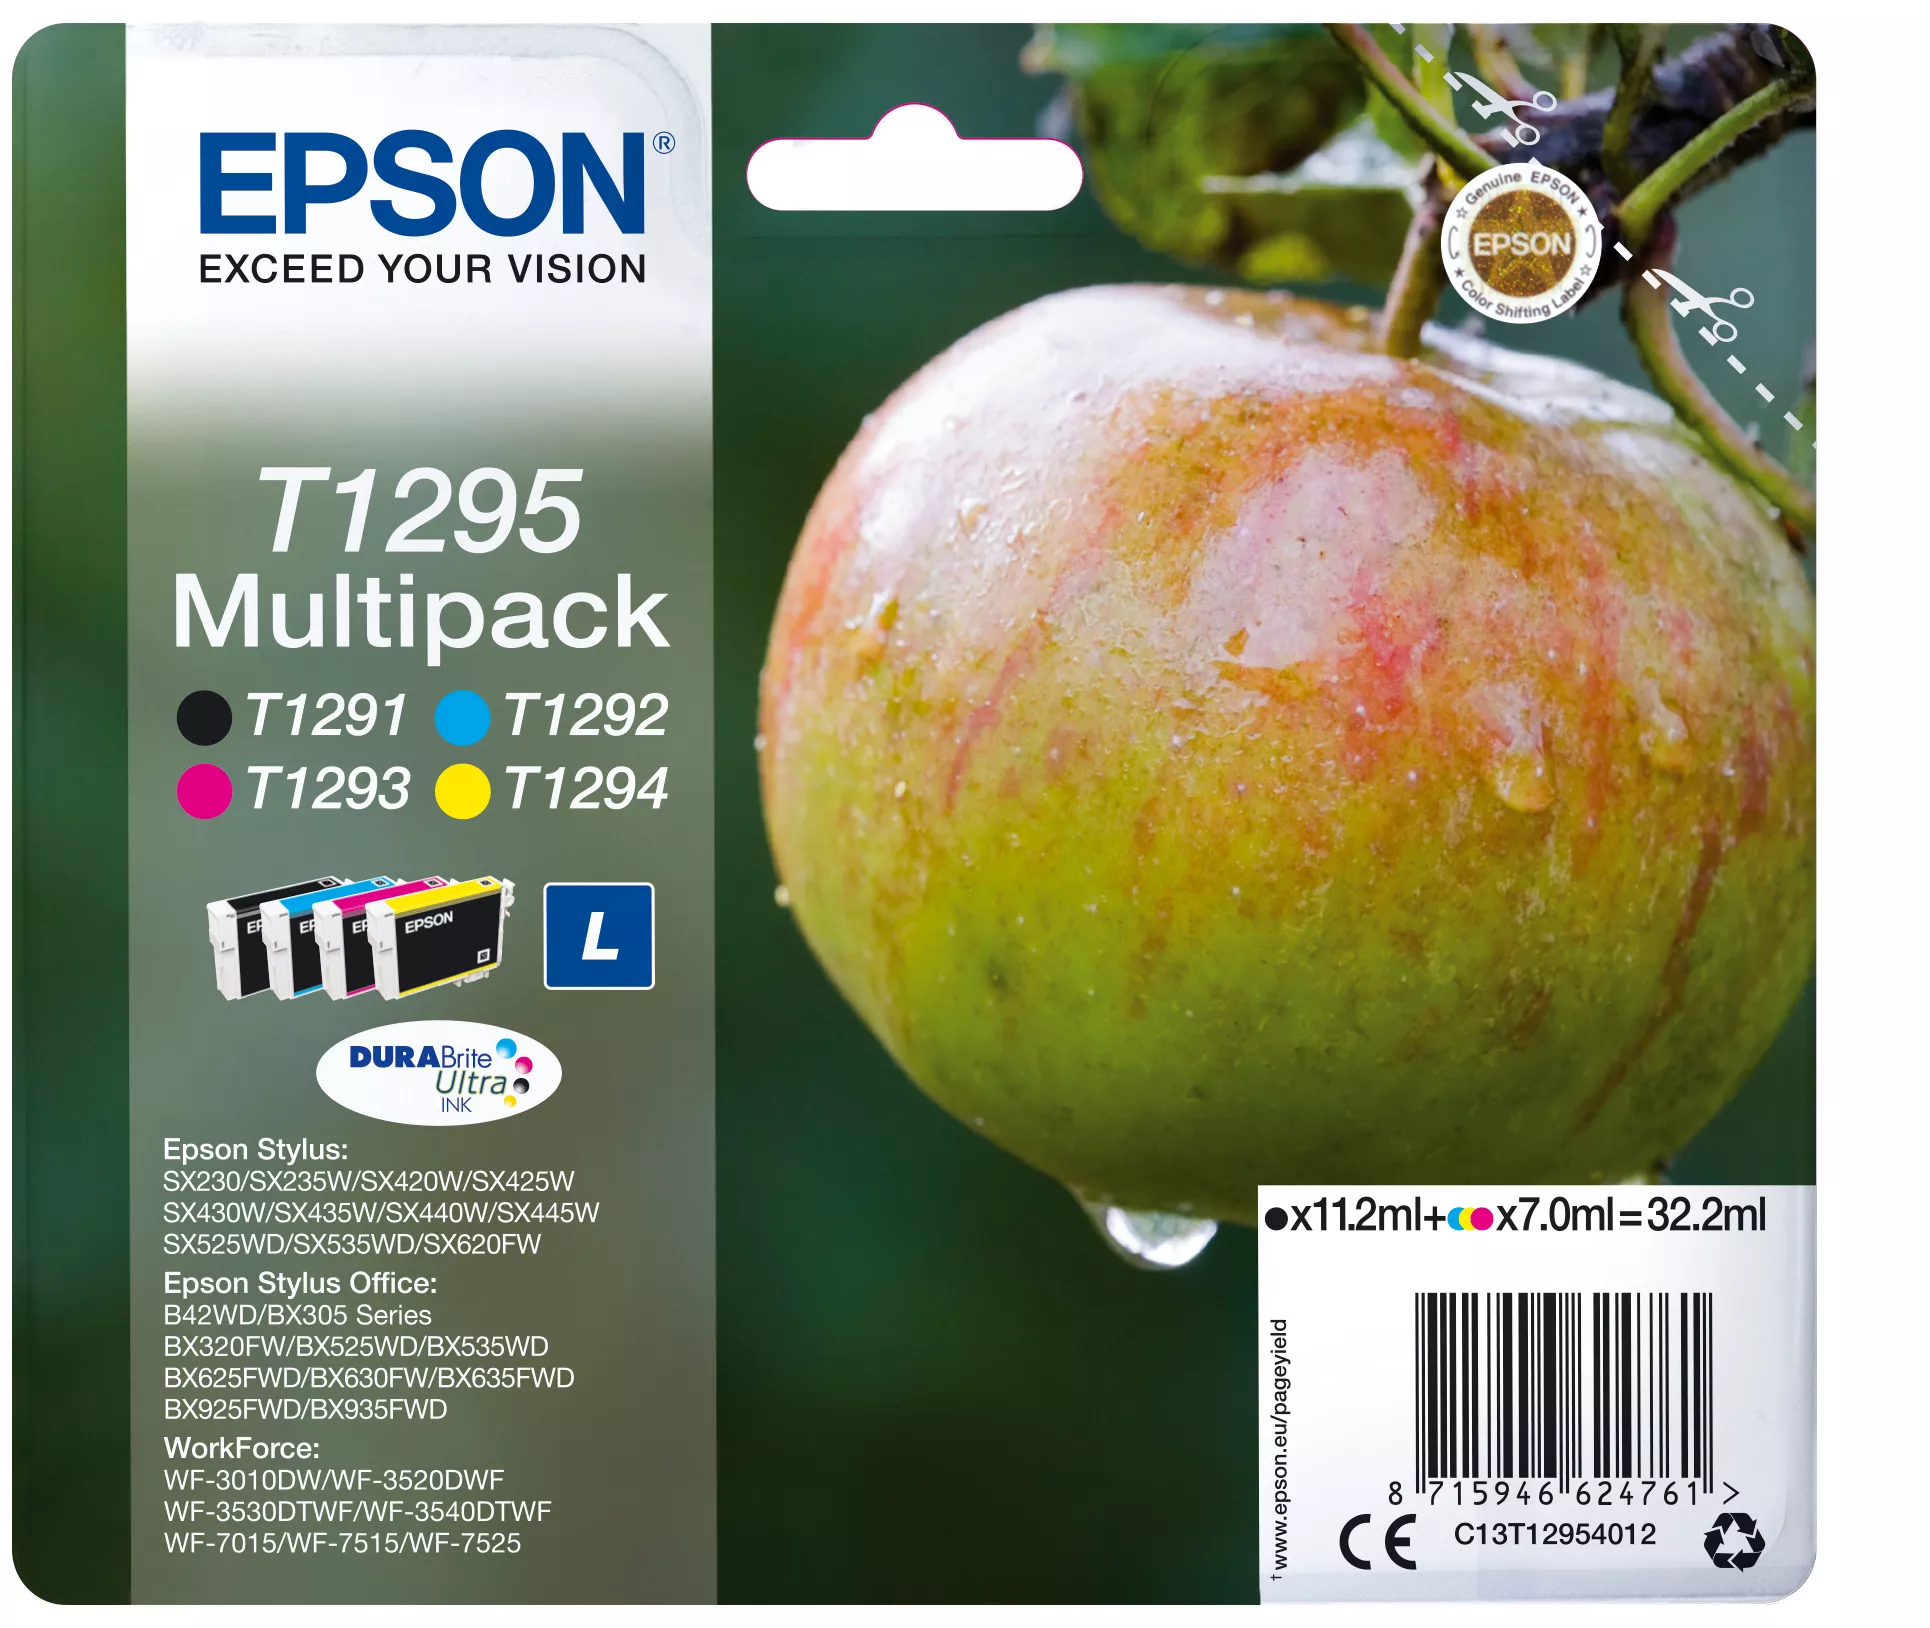 Achat EPSON T1295 cartouche d encre noir et tricolore haute au meilleur prix